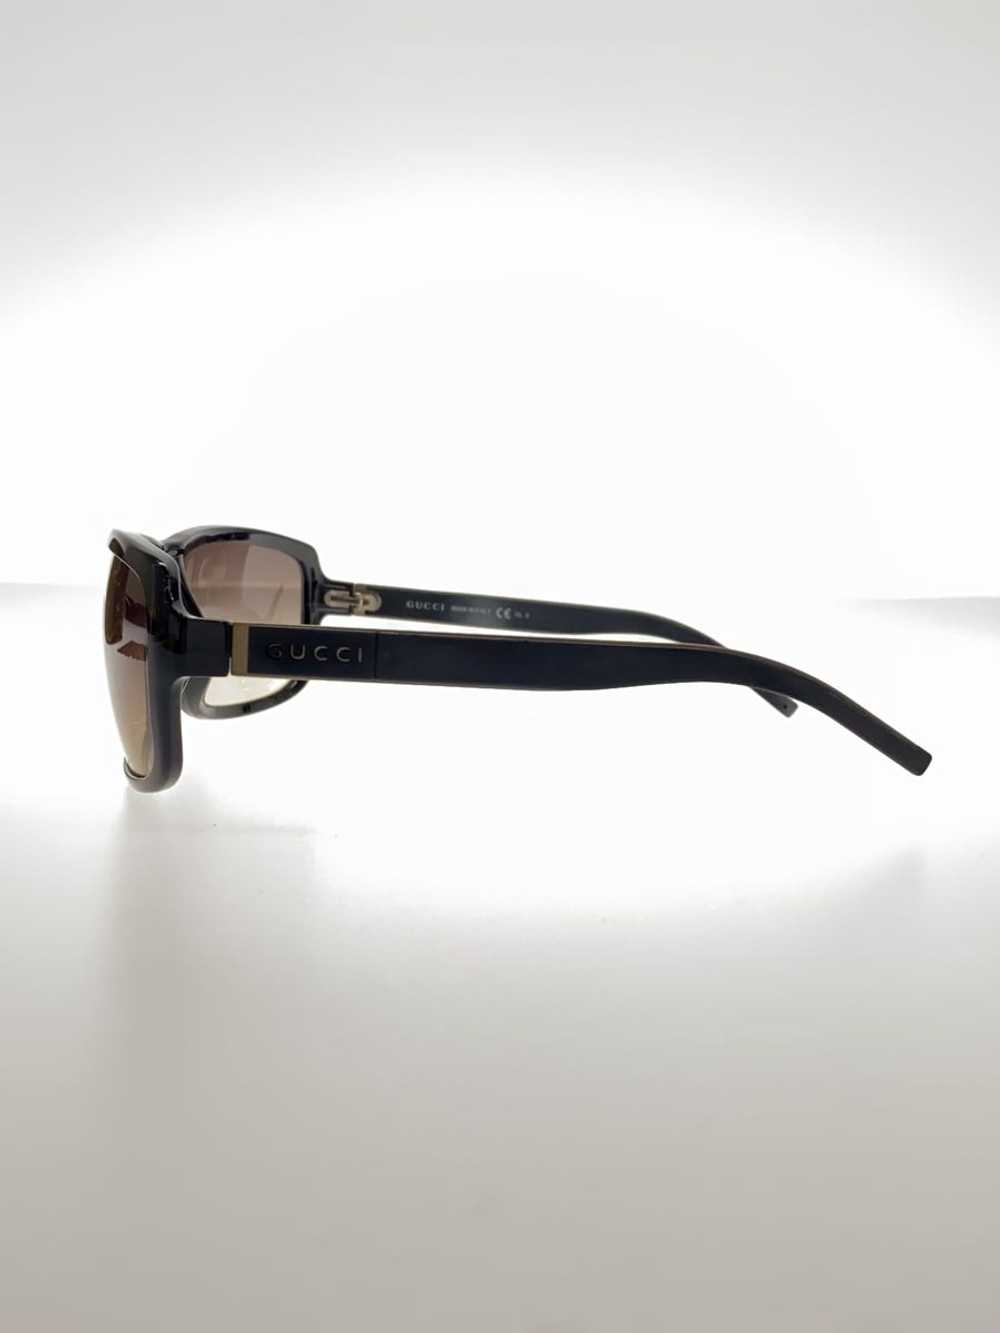 Used Gucci Sunglasses/Titanium/Blk/Ladies/Gg1642F - image 3